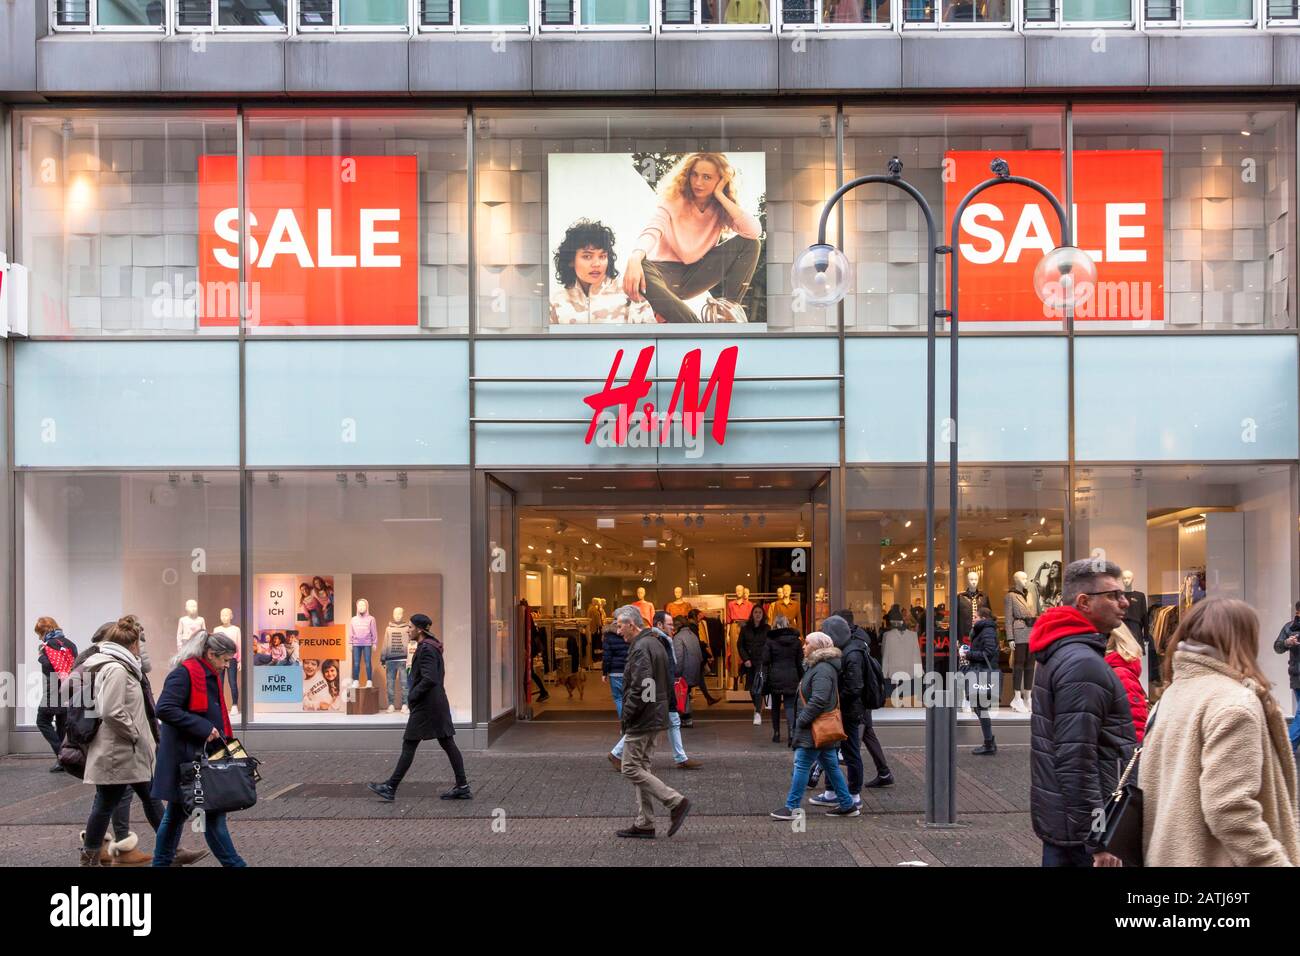 Europe, Germany, Cologne, H&M store on the shopping street Schildergasse.  Euroa, Deuschland, Koeln, H&M Filiale auf der Einkaufsstrasse Schildergasse Stock Photo